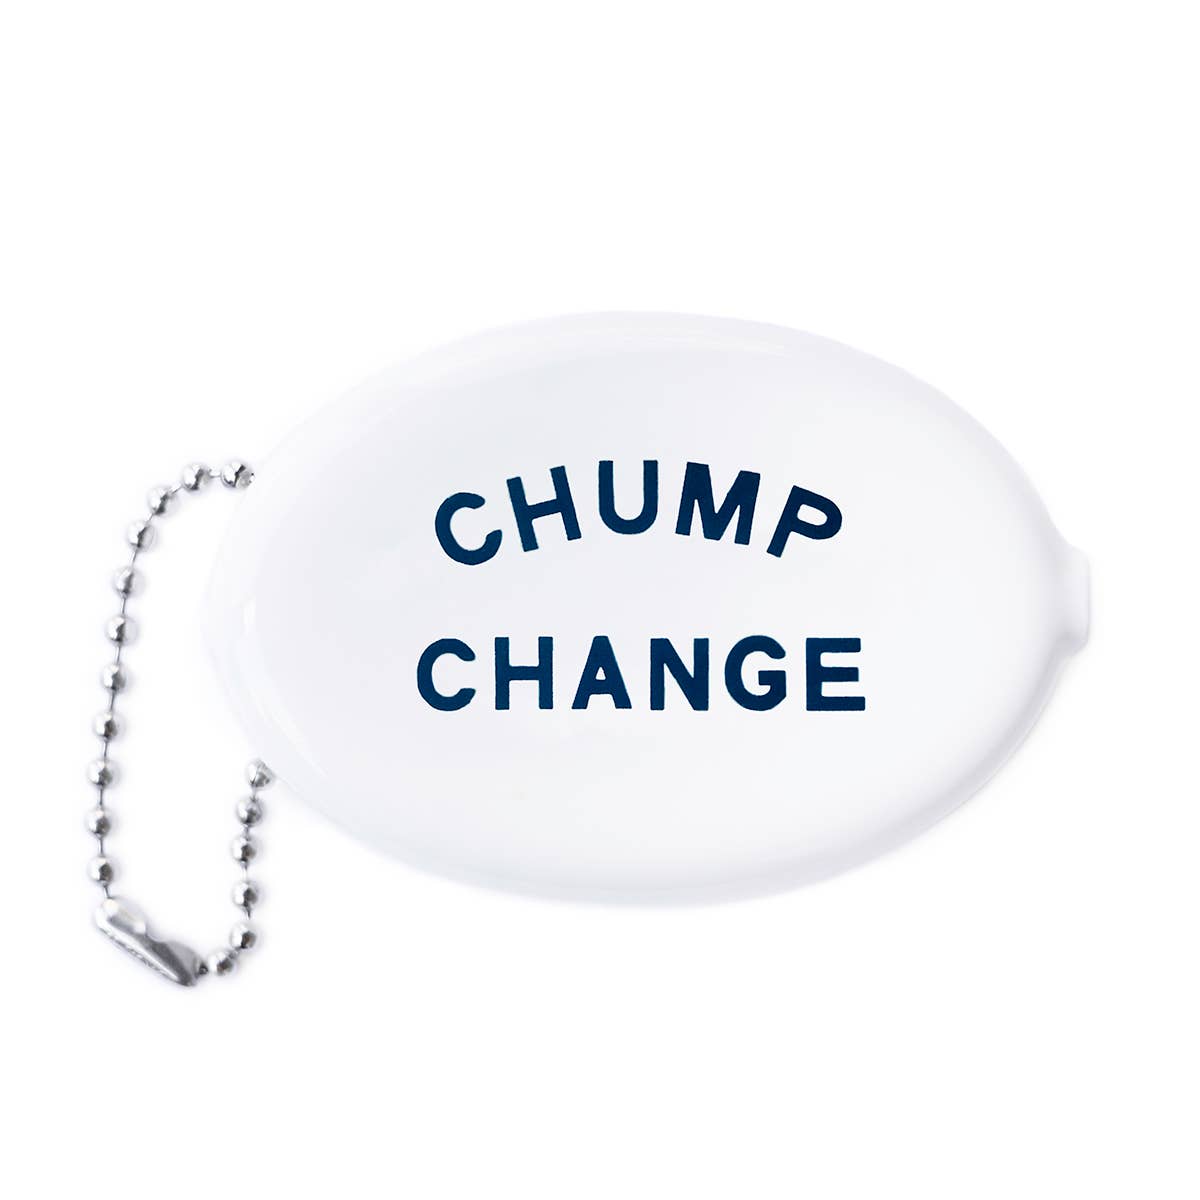 Chump Change Coin Pouch